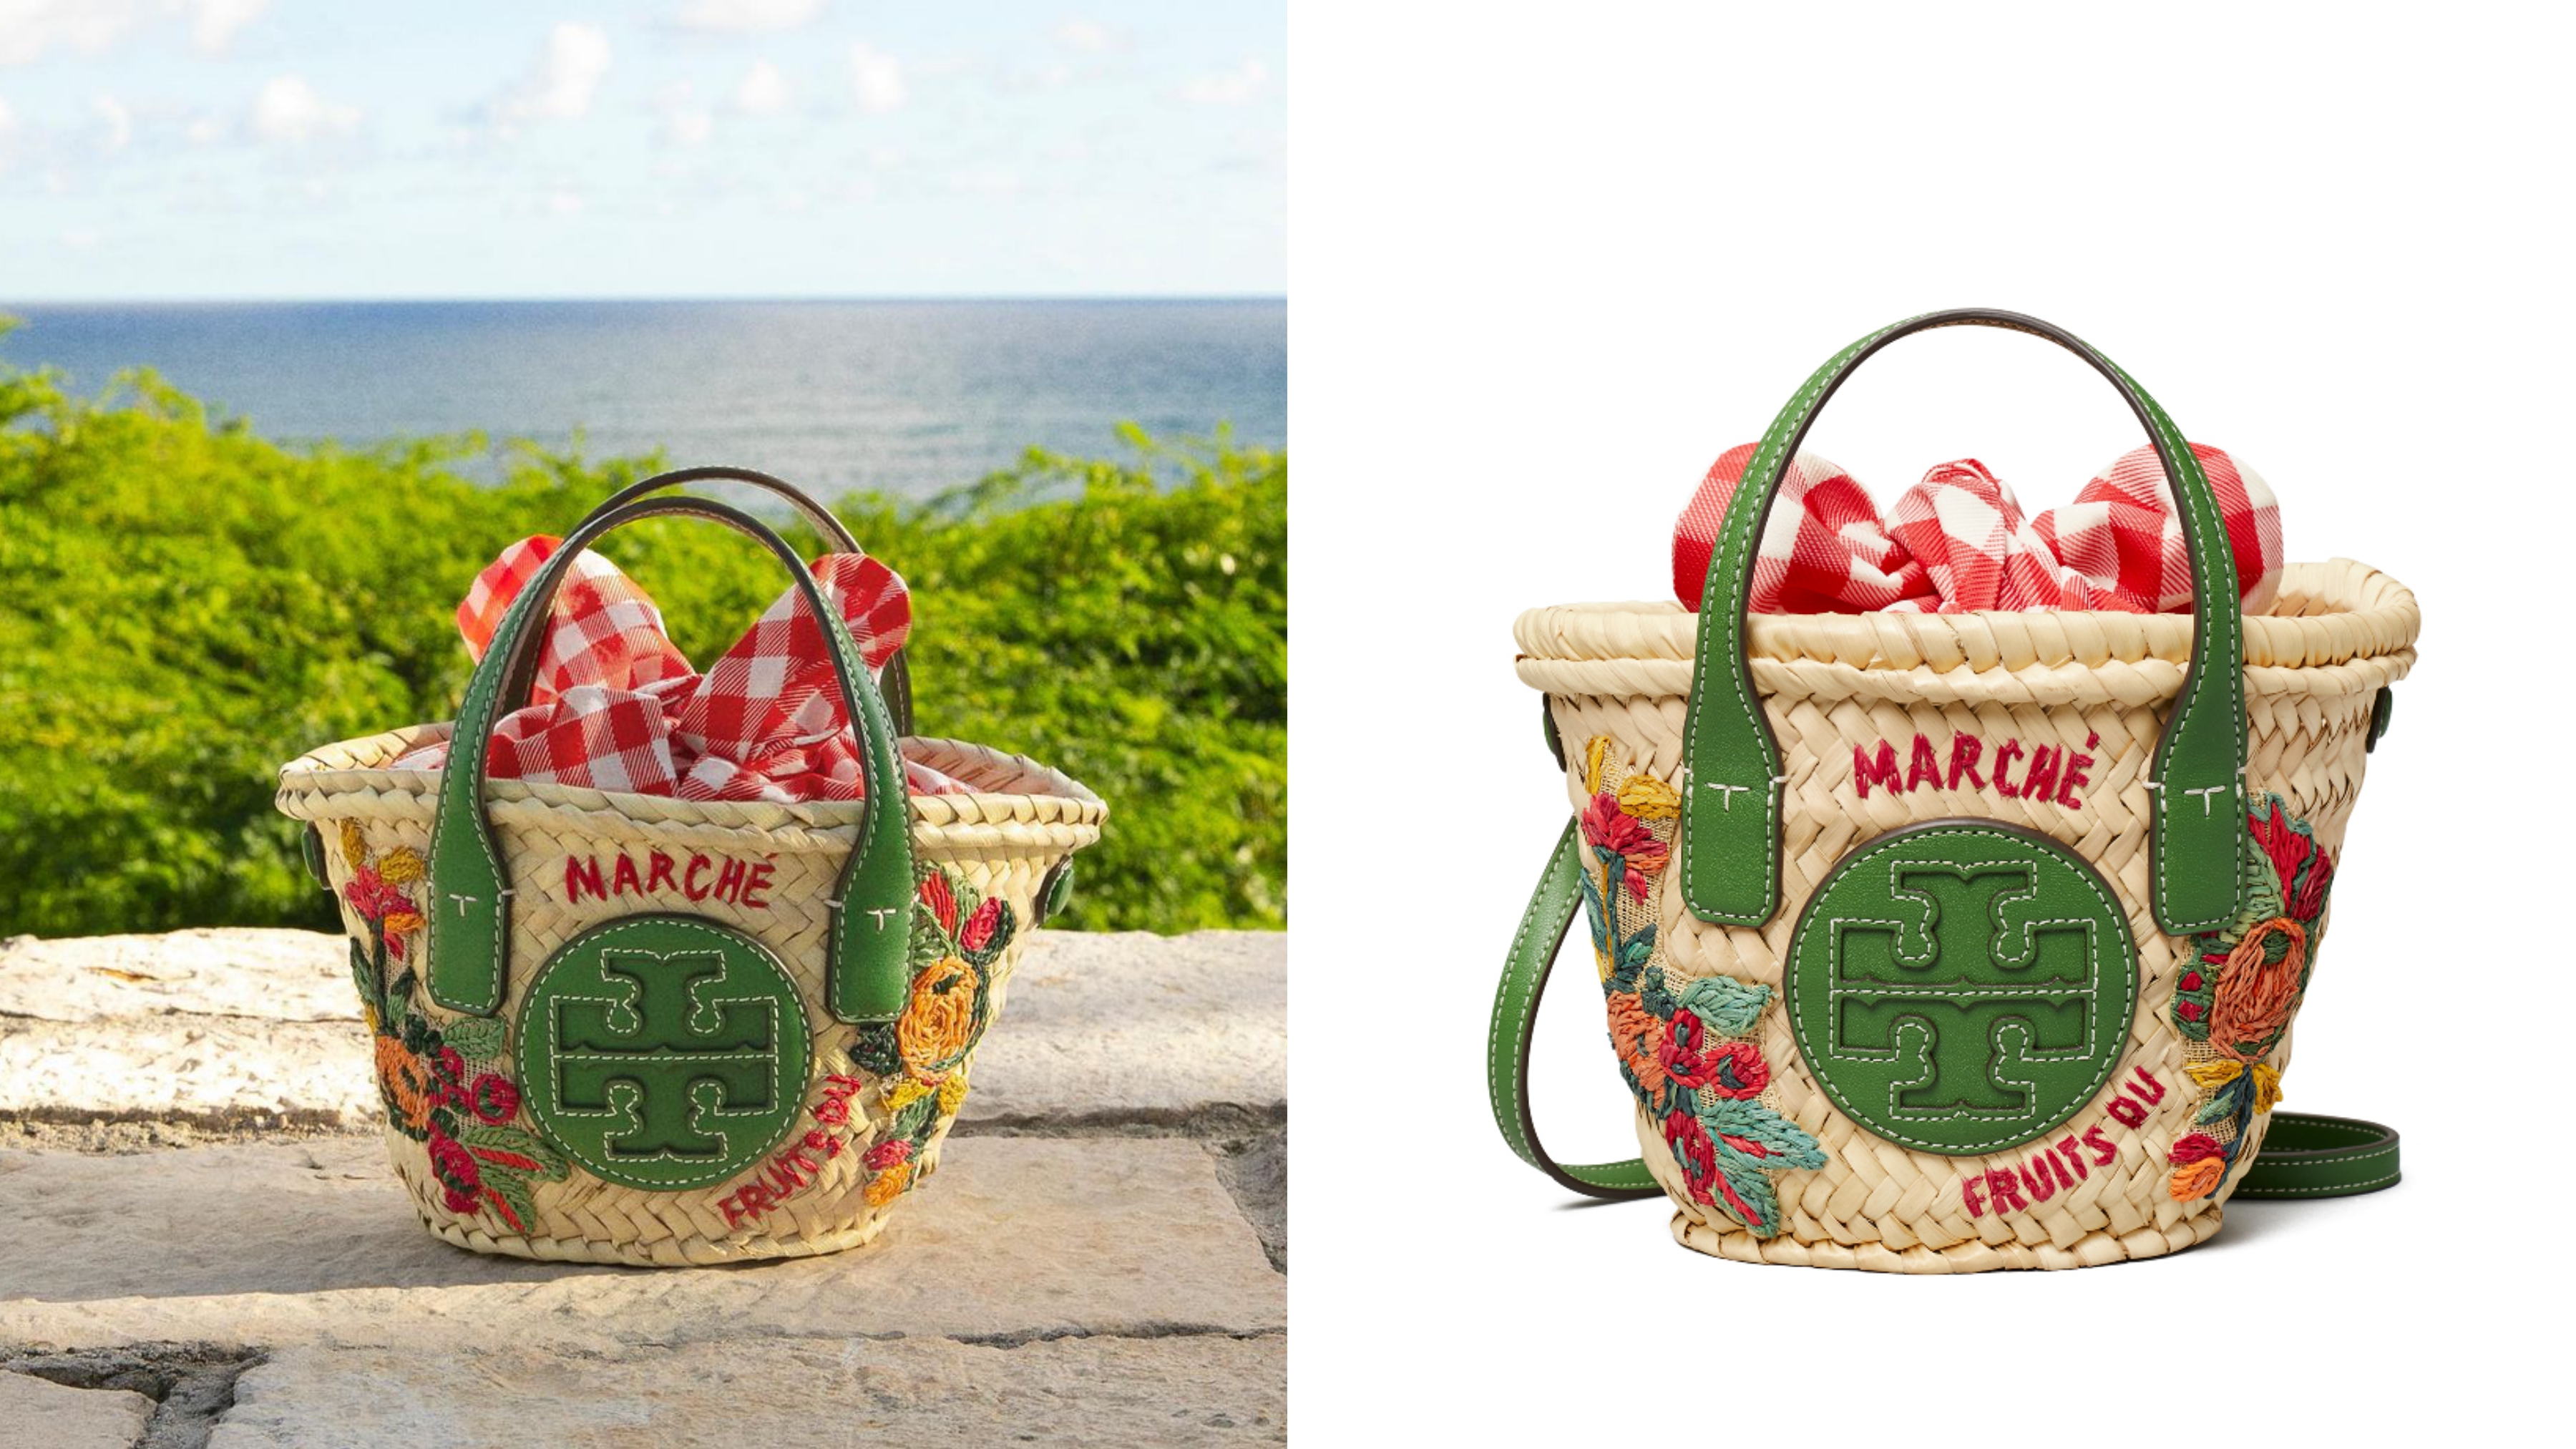 設計靈感來自於法國市場水果攤使用的紙袋，裝滿亮麗水果的提籃印花